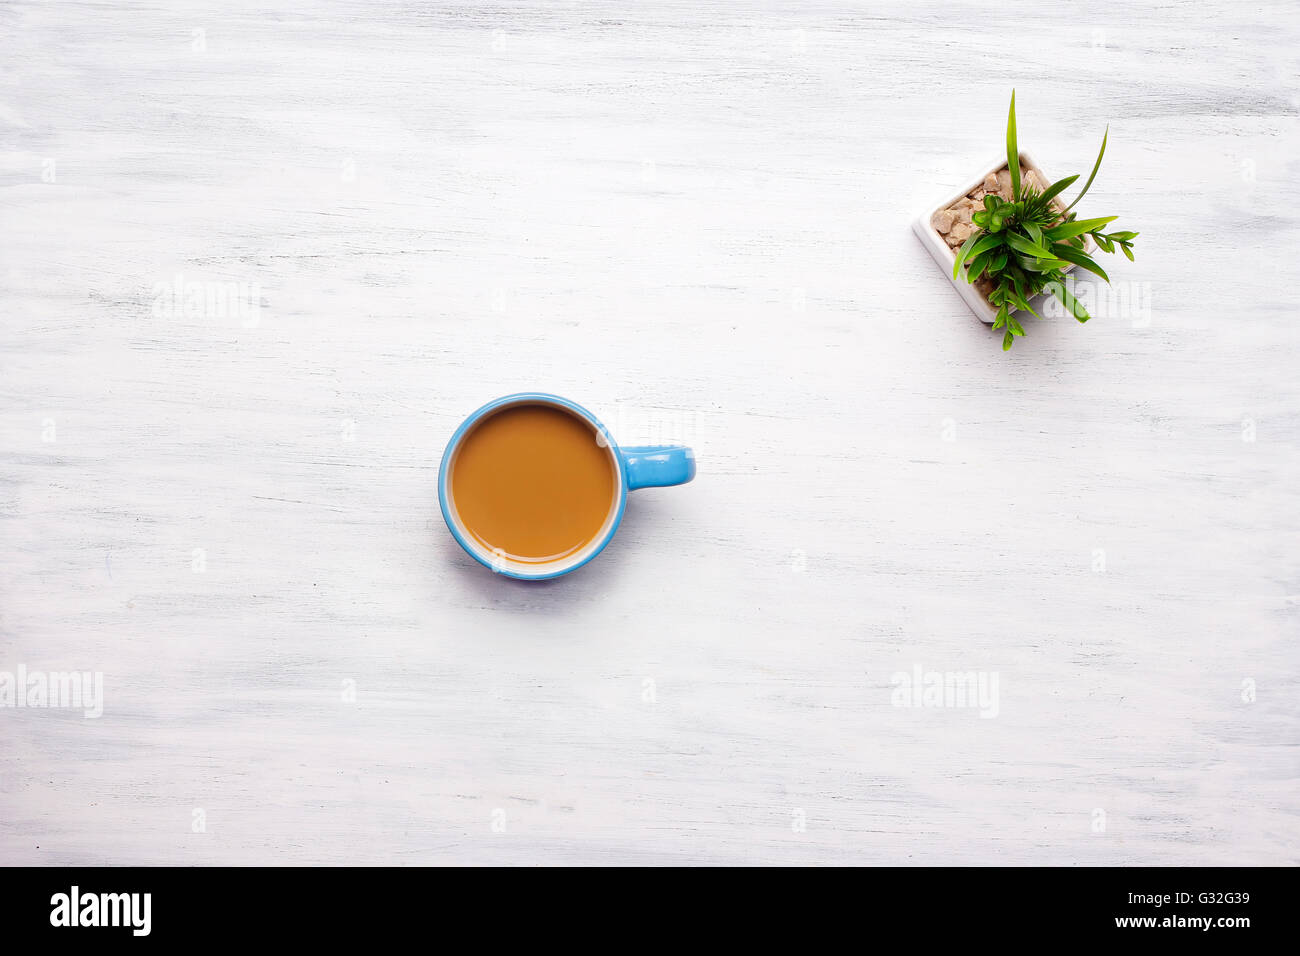 Draufsicht der Tasse Kaffee auf einem weißen Holztisch. Pause von der Arbeit, Lifestyle-Konzept. Stockfoto